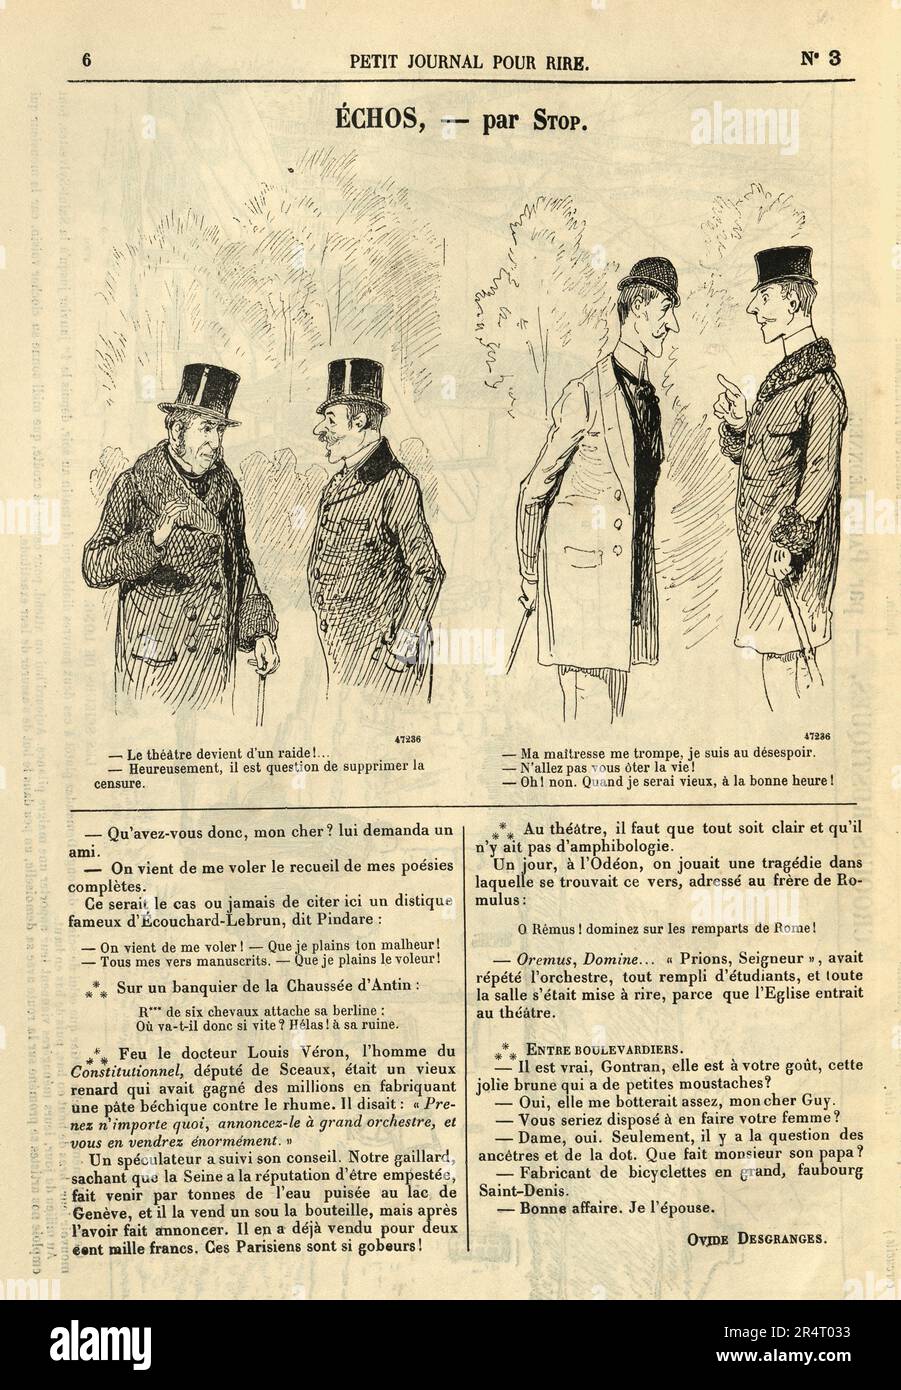 1890s fashion illustration immagini e fotografie stock ad alta risoluzione  - Alamy